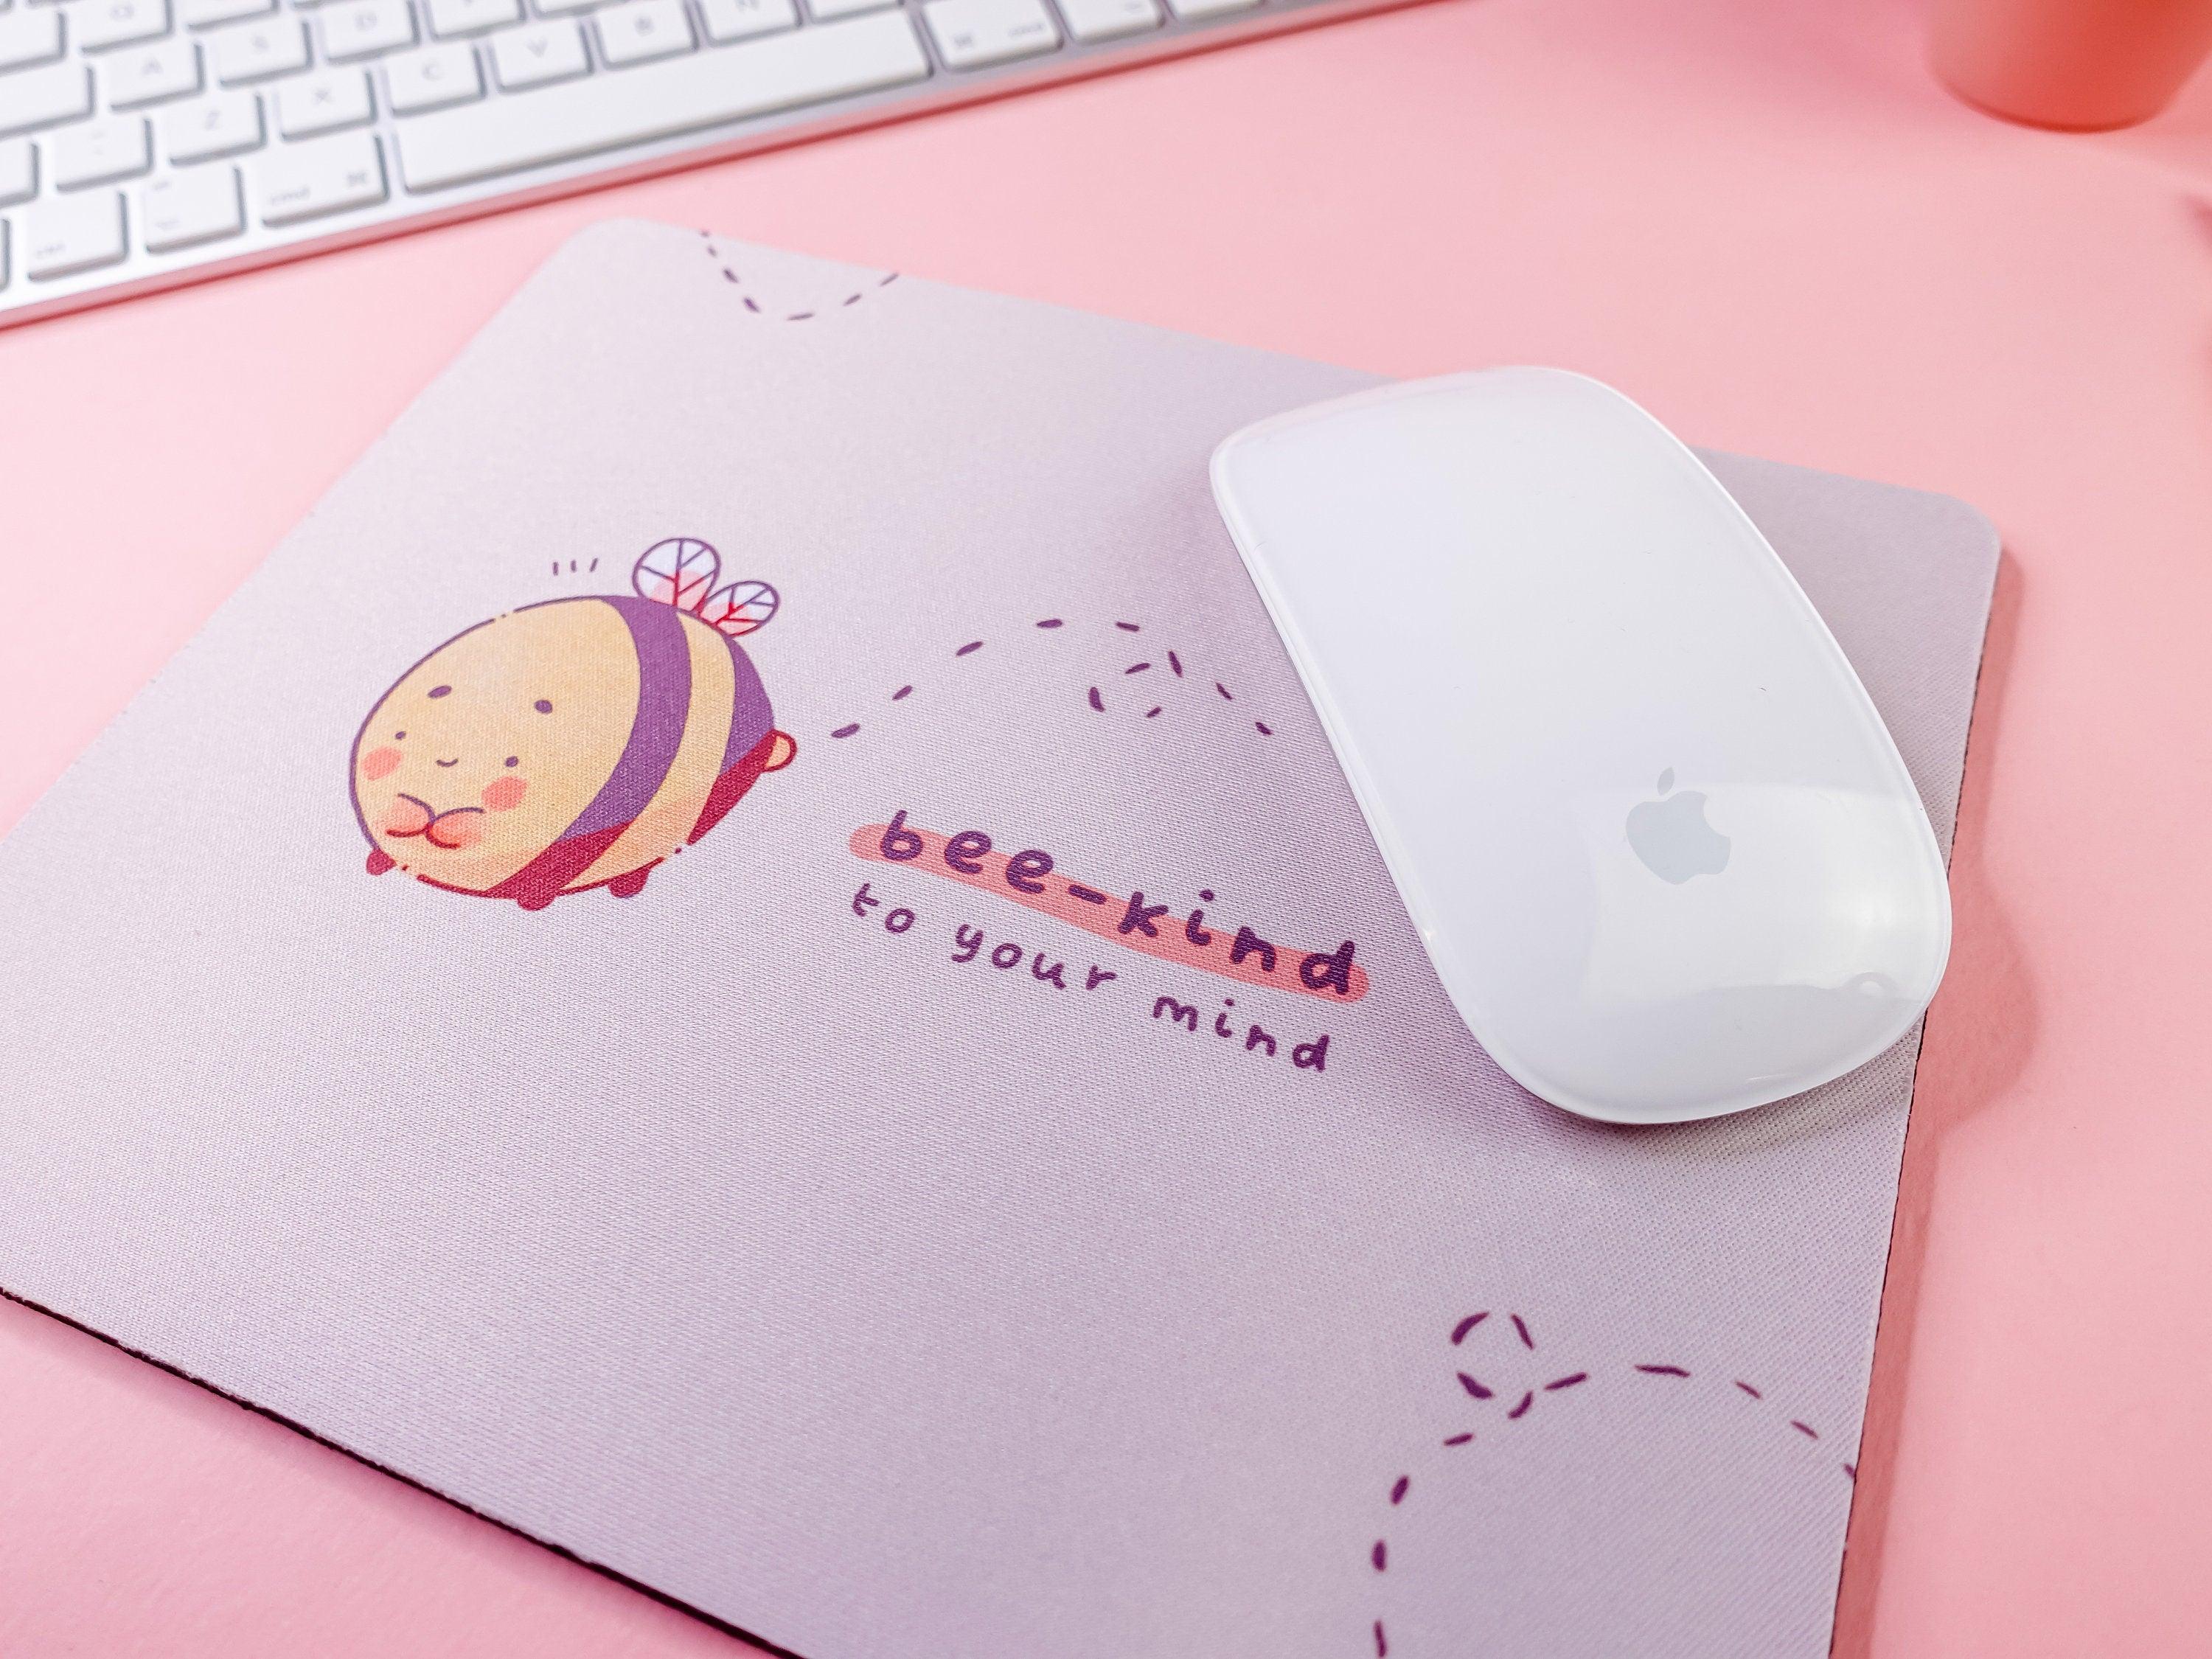 Kawaii Mouse Mats featuring Bumblebutt design, hand-printed originals.